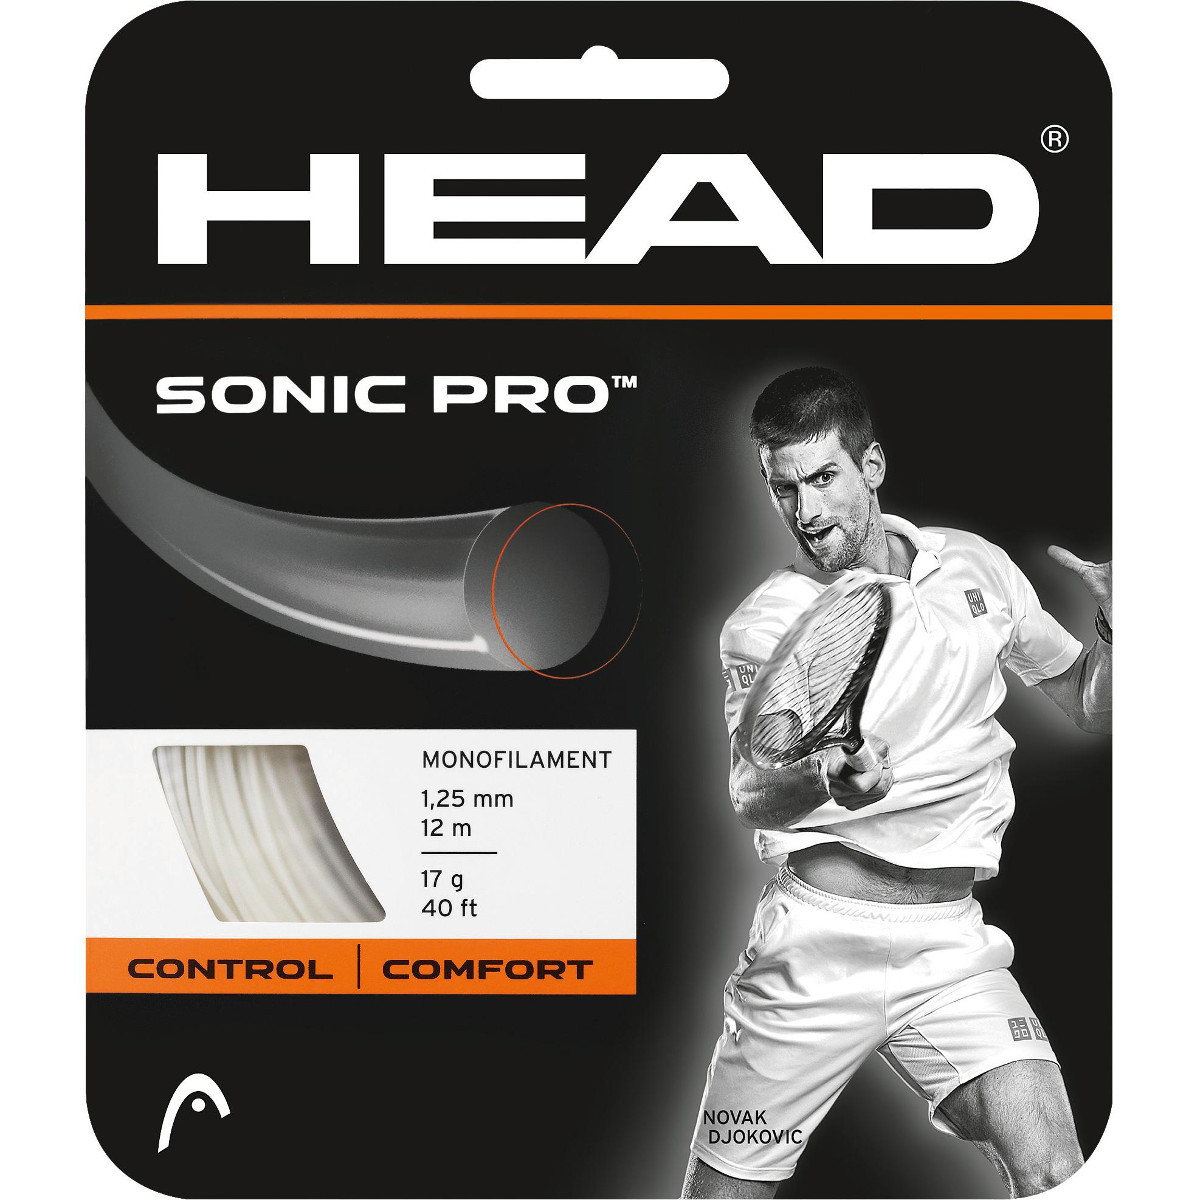 Теннисные струны Head Sonic Pro 17. Фото �2